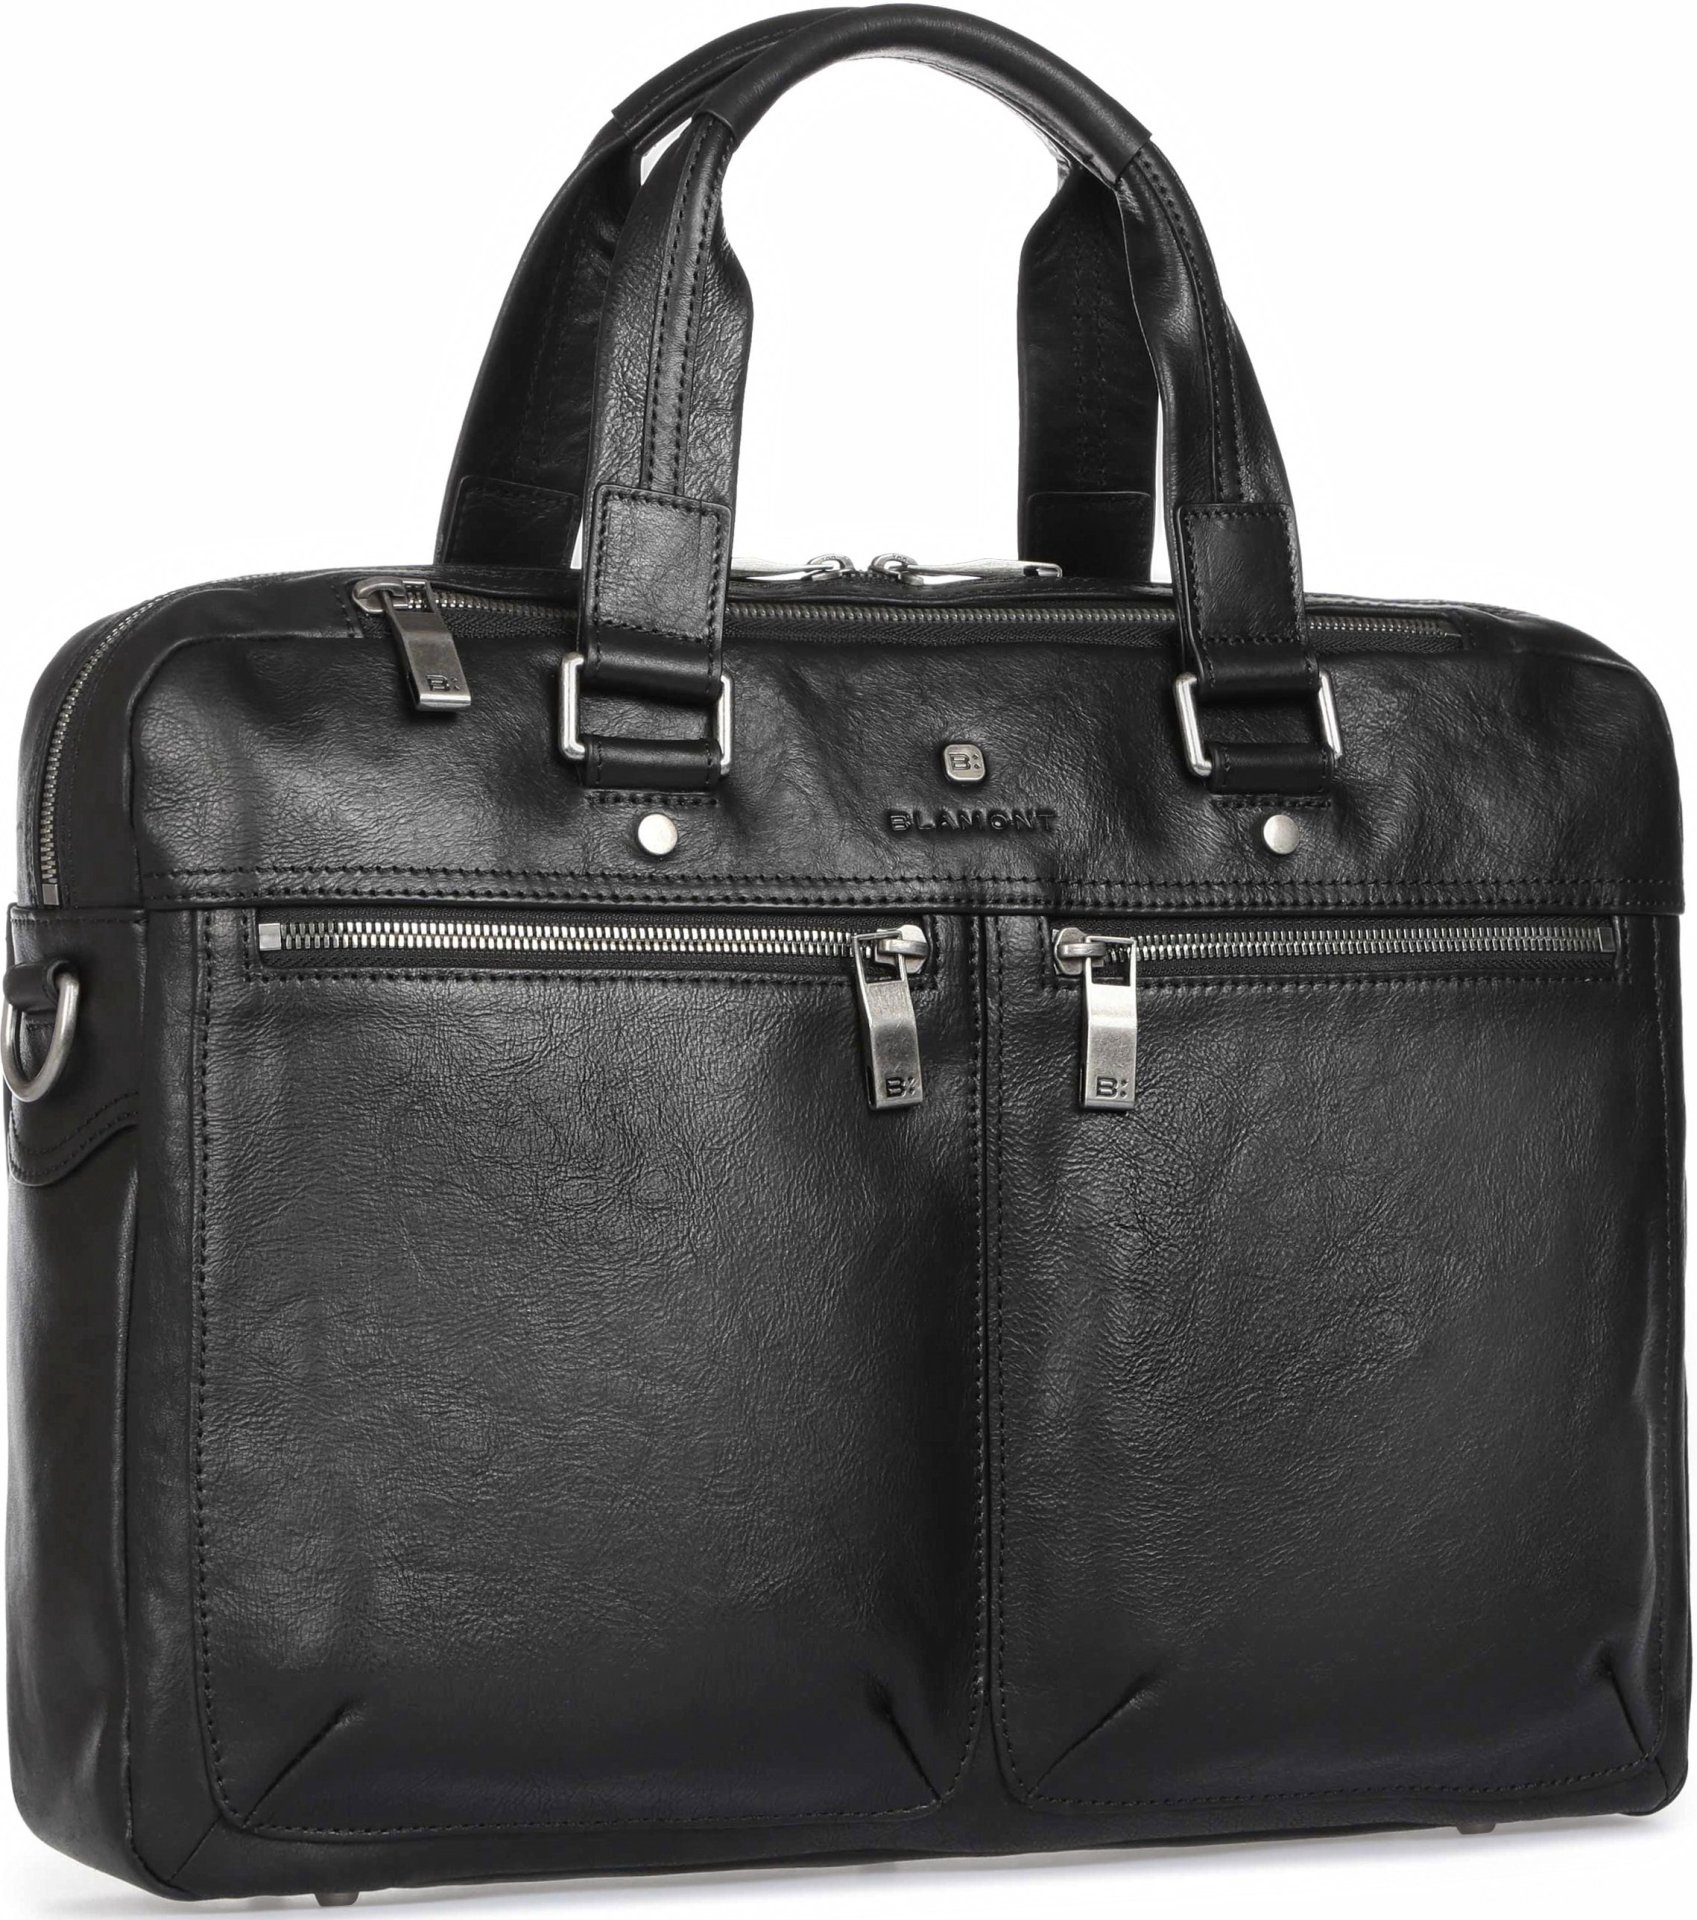 Деловая мужская кожаная сумка премиального качества Blamont P5912071